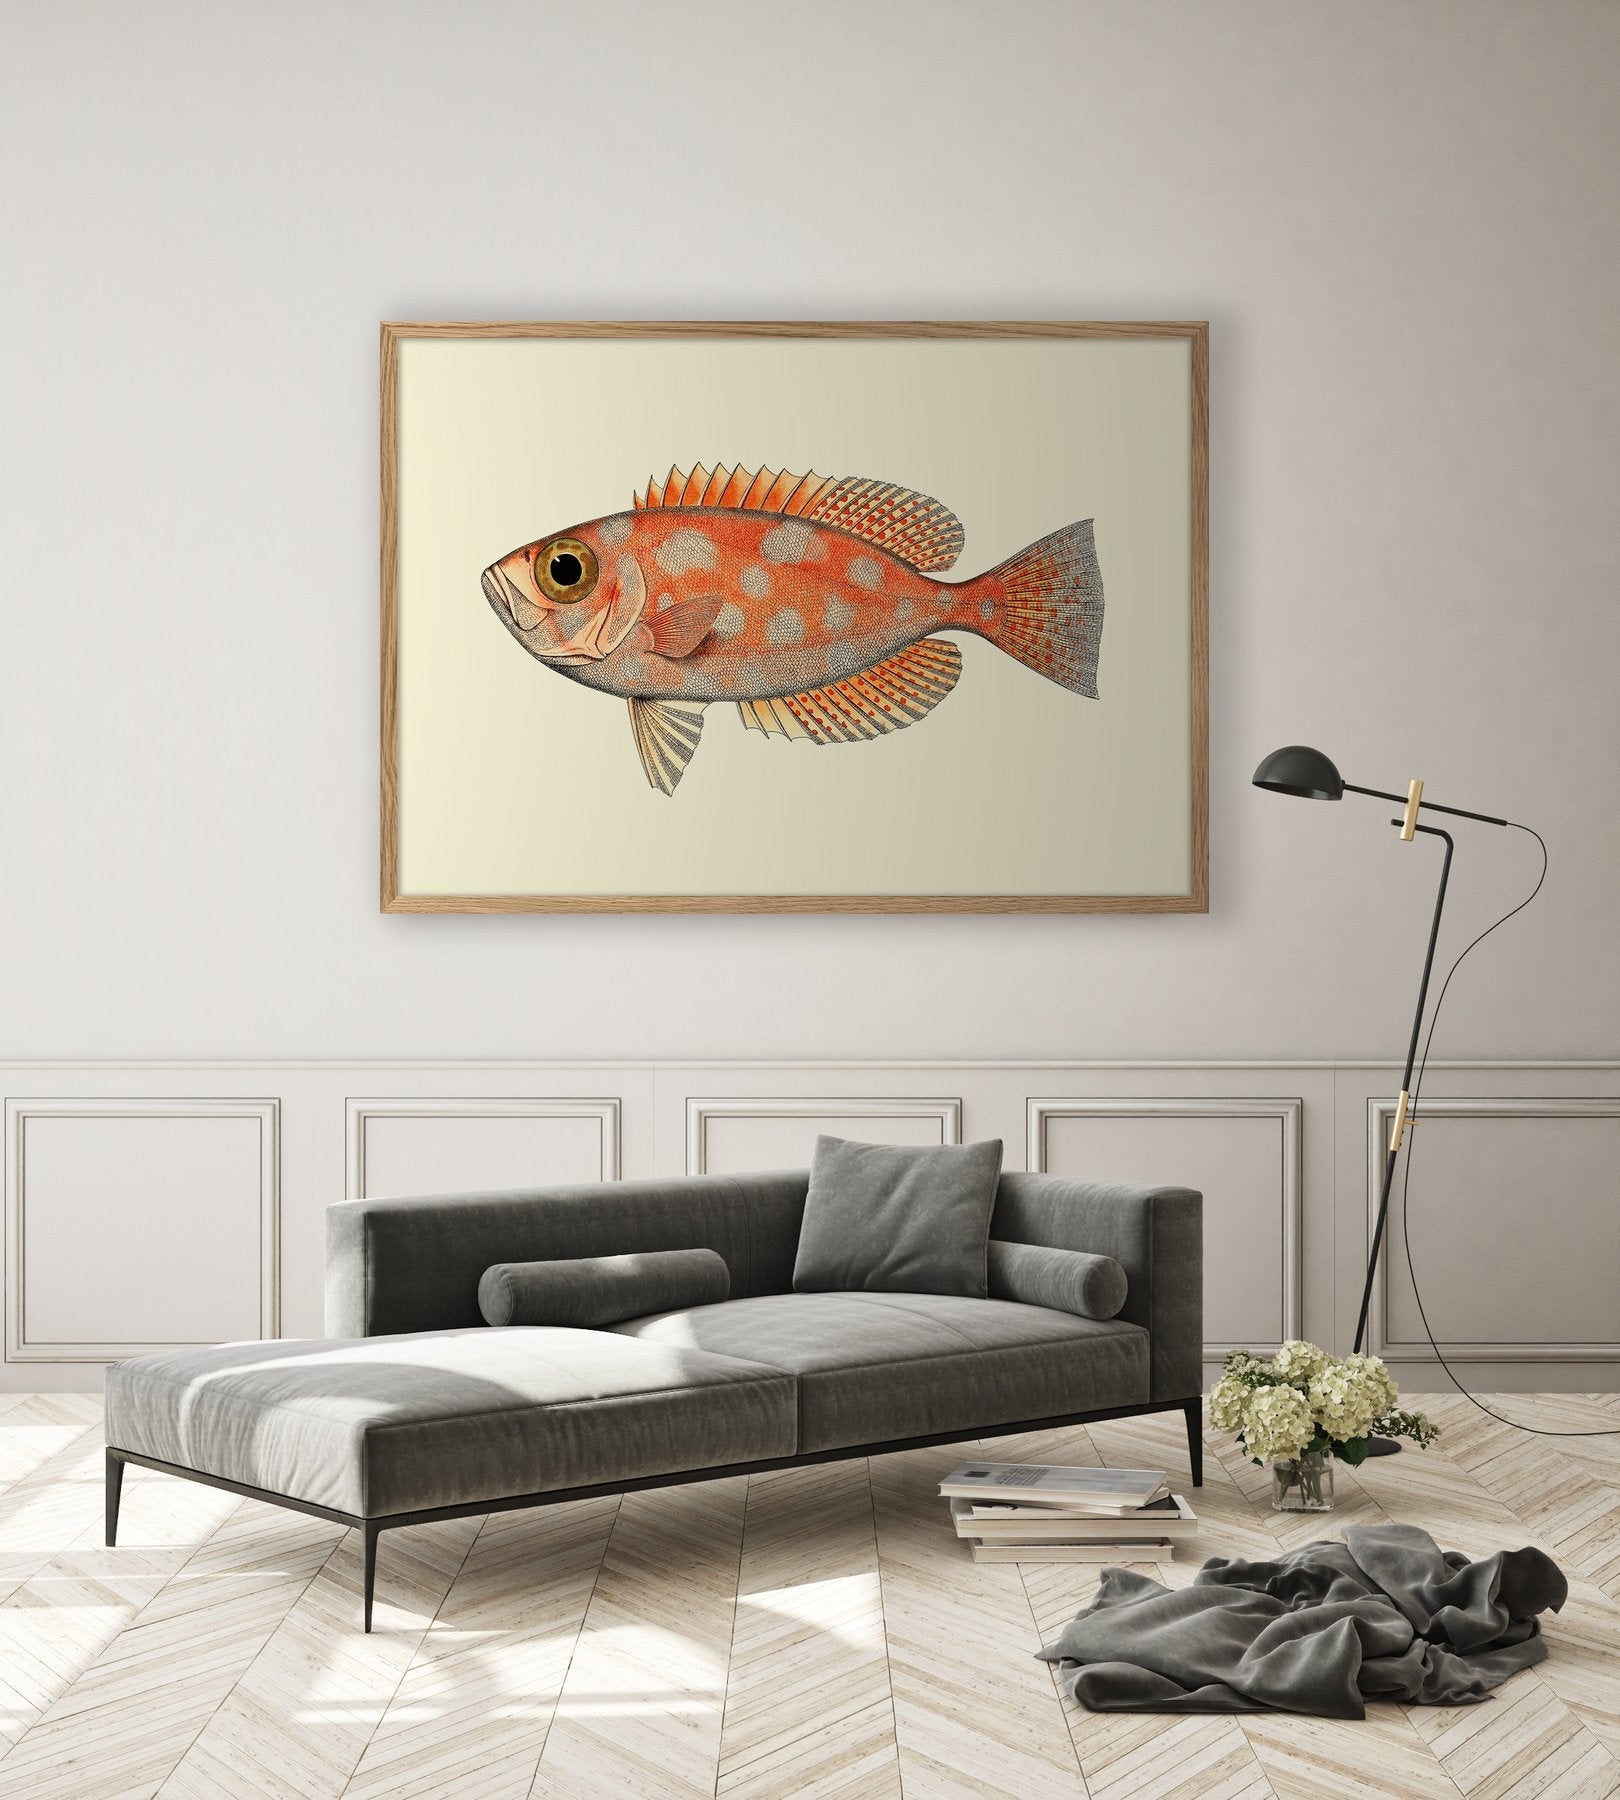 Dybdahl Poster - Orange Dots Fish - Art Prints - Dybdahl - Brand_Dybdahl - Home_Decor - KTFWHS - New Arrivals - Mega_fish_4000_styling_1800x1800_507ec5a2-5acf-4126-a3b8-4ac166665608